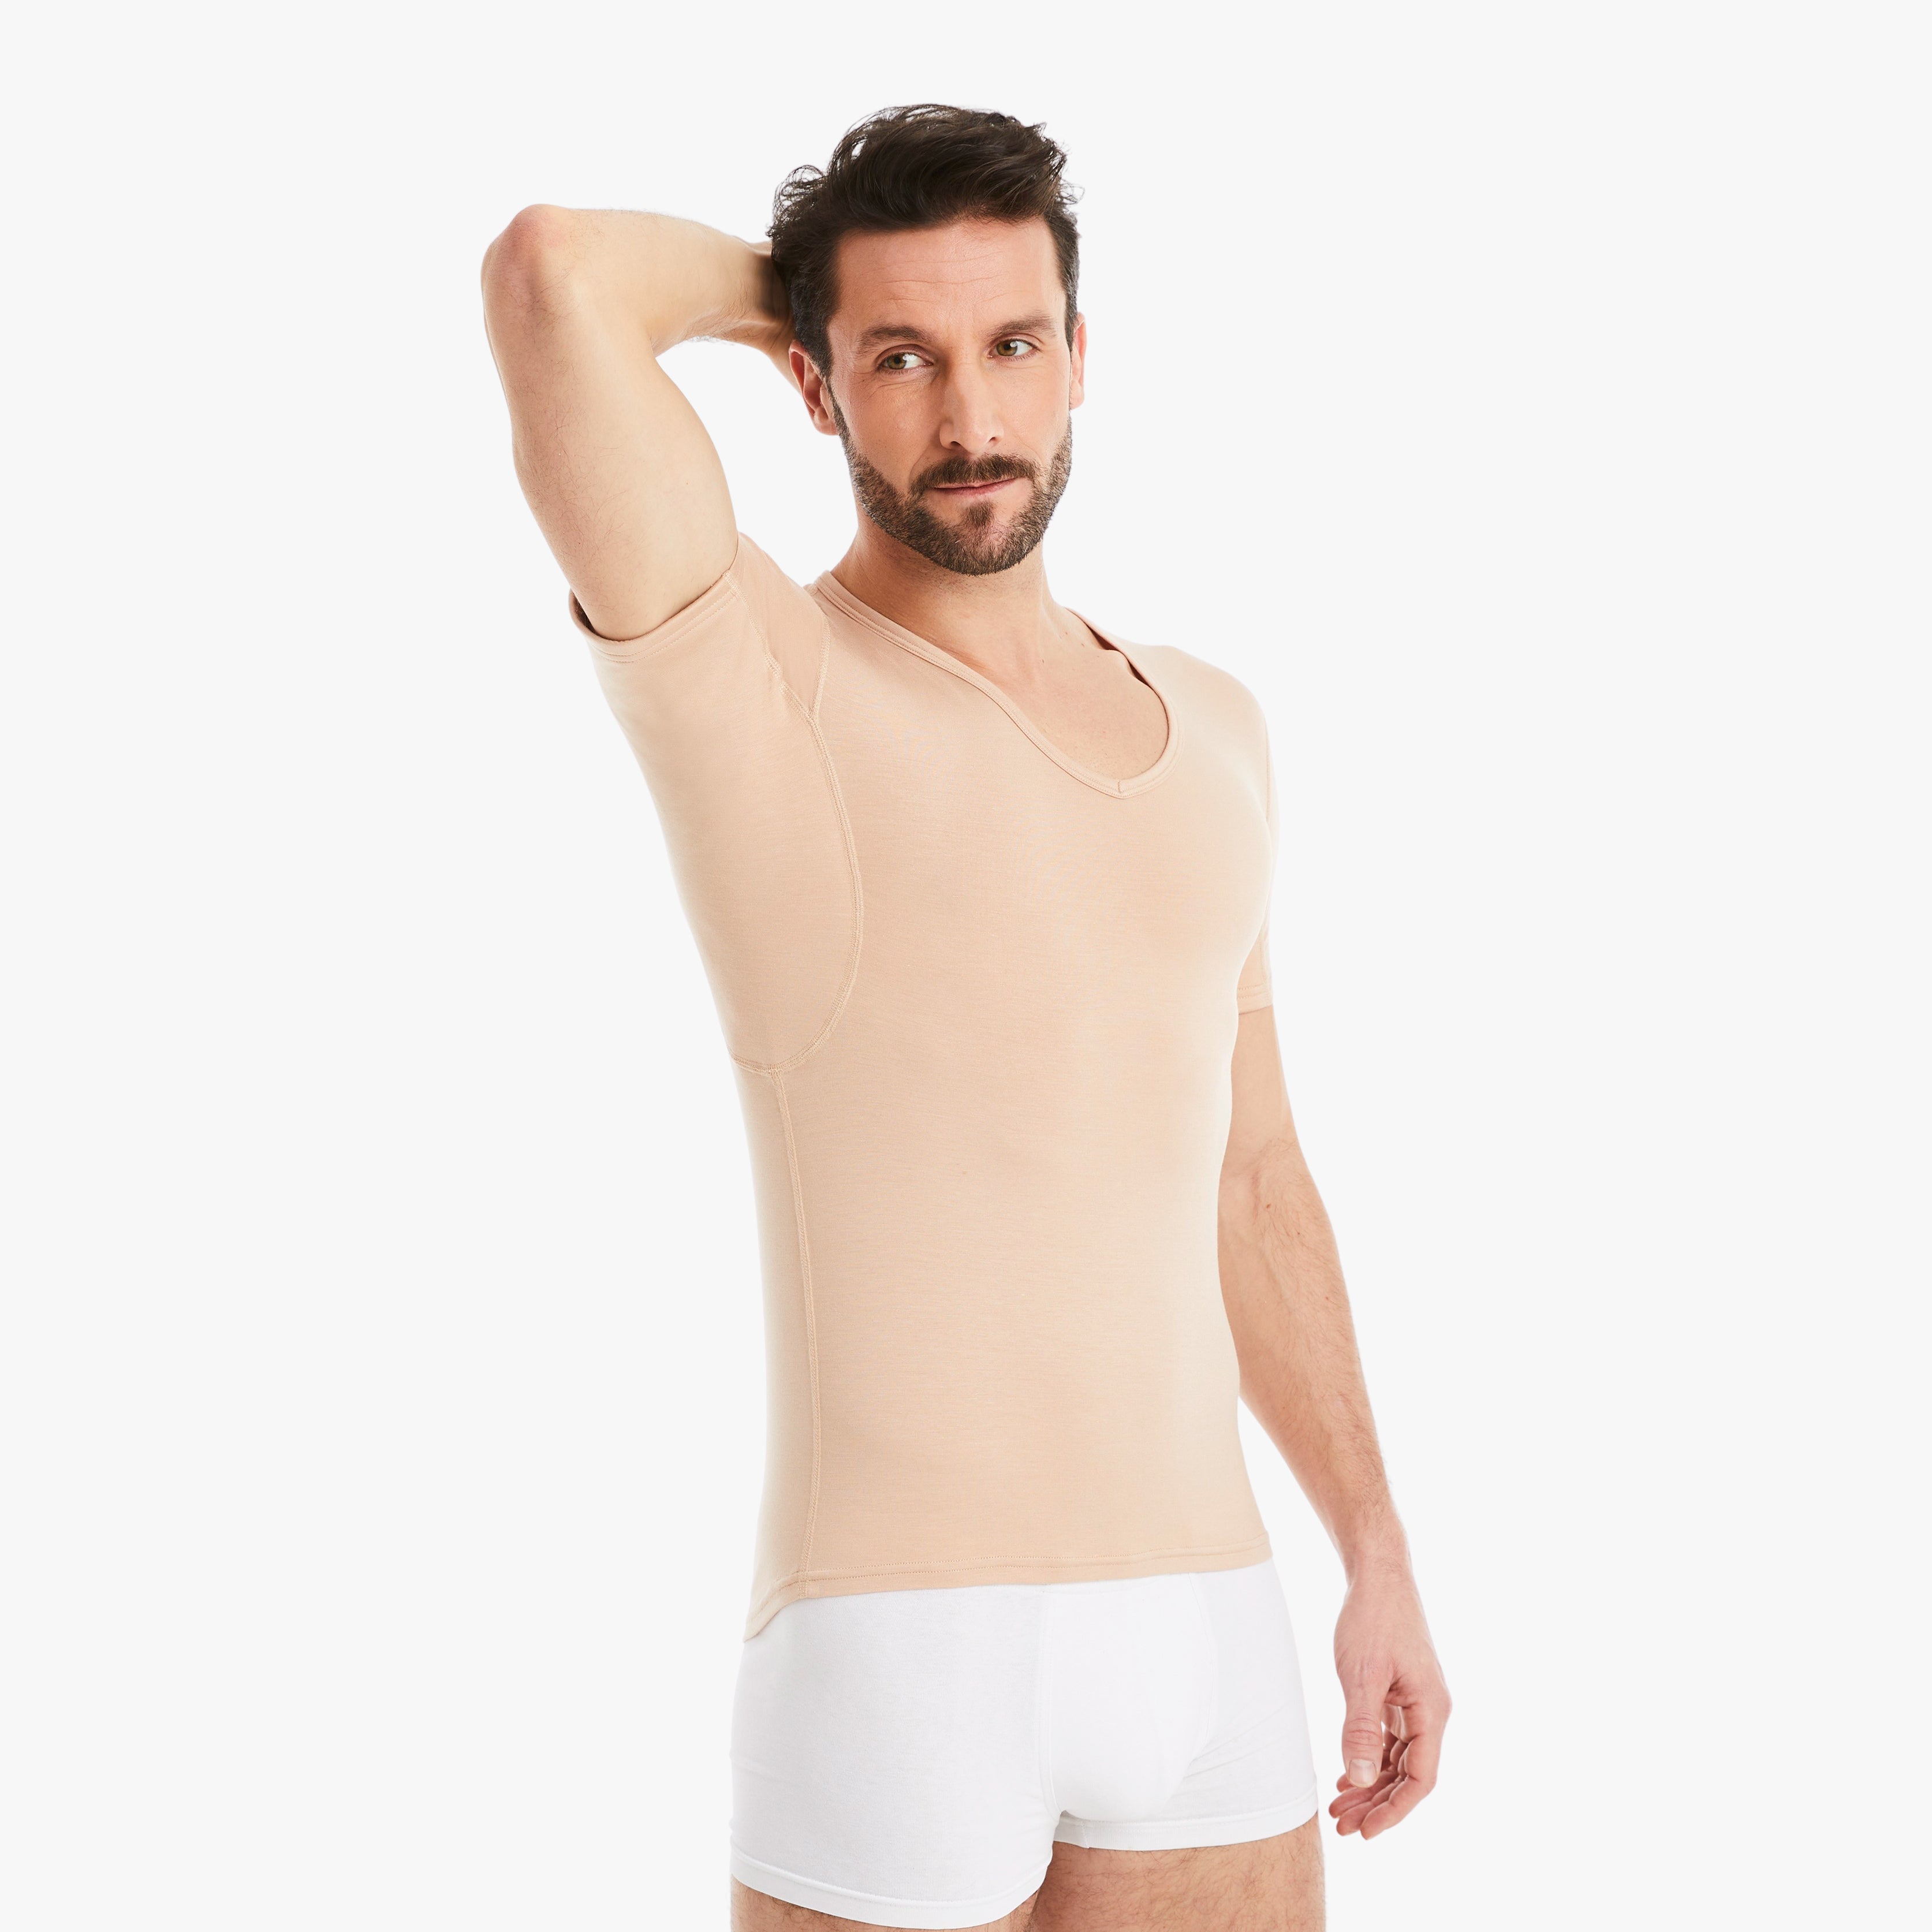 Mann trägt nude Anti-Schweiß Unterhemd Herren mit V-Abschnitt in Größe M. 100% Schutz vor Schweißflecken. Zertifizierter Tragekomfort, während er selbstbewusst die Achseln ohne Schweißflecken zeigt. #farbe_nude